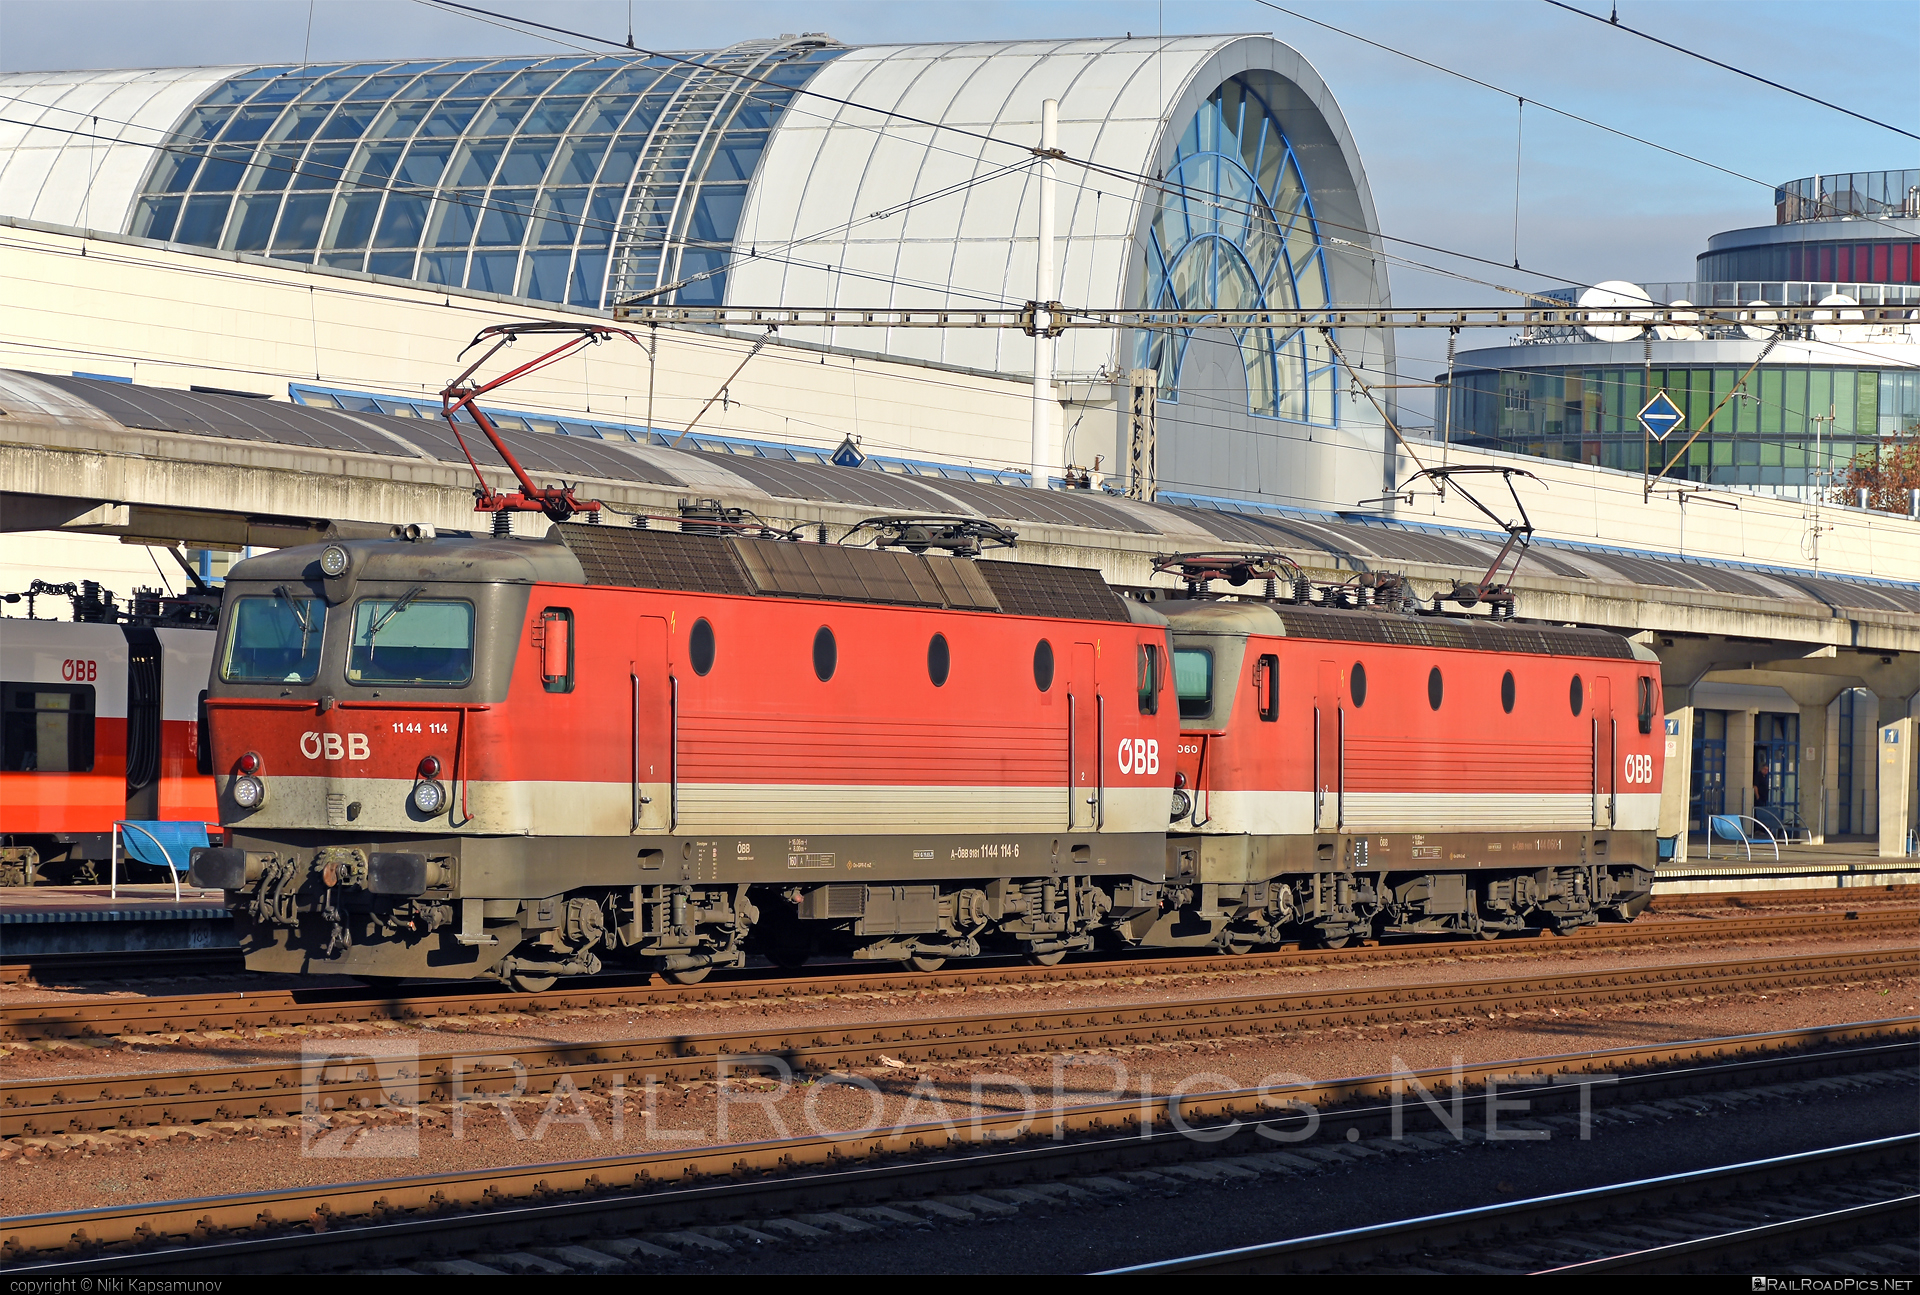 SGP ÖBB Class 1144 - 1144 114 operated by Rail Cargo Austria AG #obb #obbclass1144 #osterreichischebundesbahnen #sgp #sgp1144 #simmeringgrazpauker